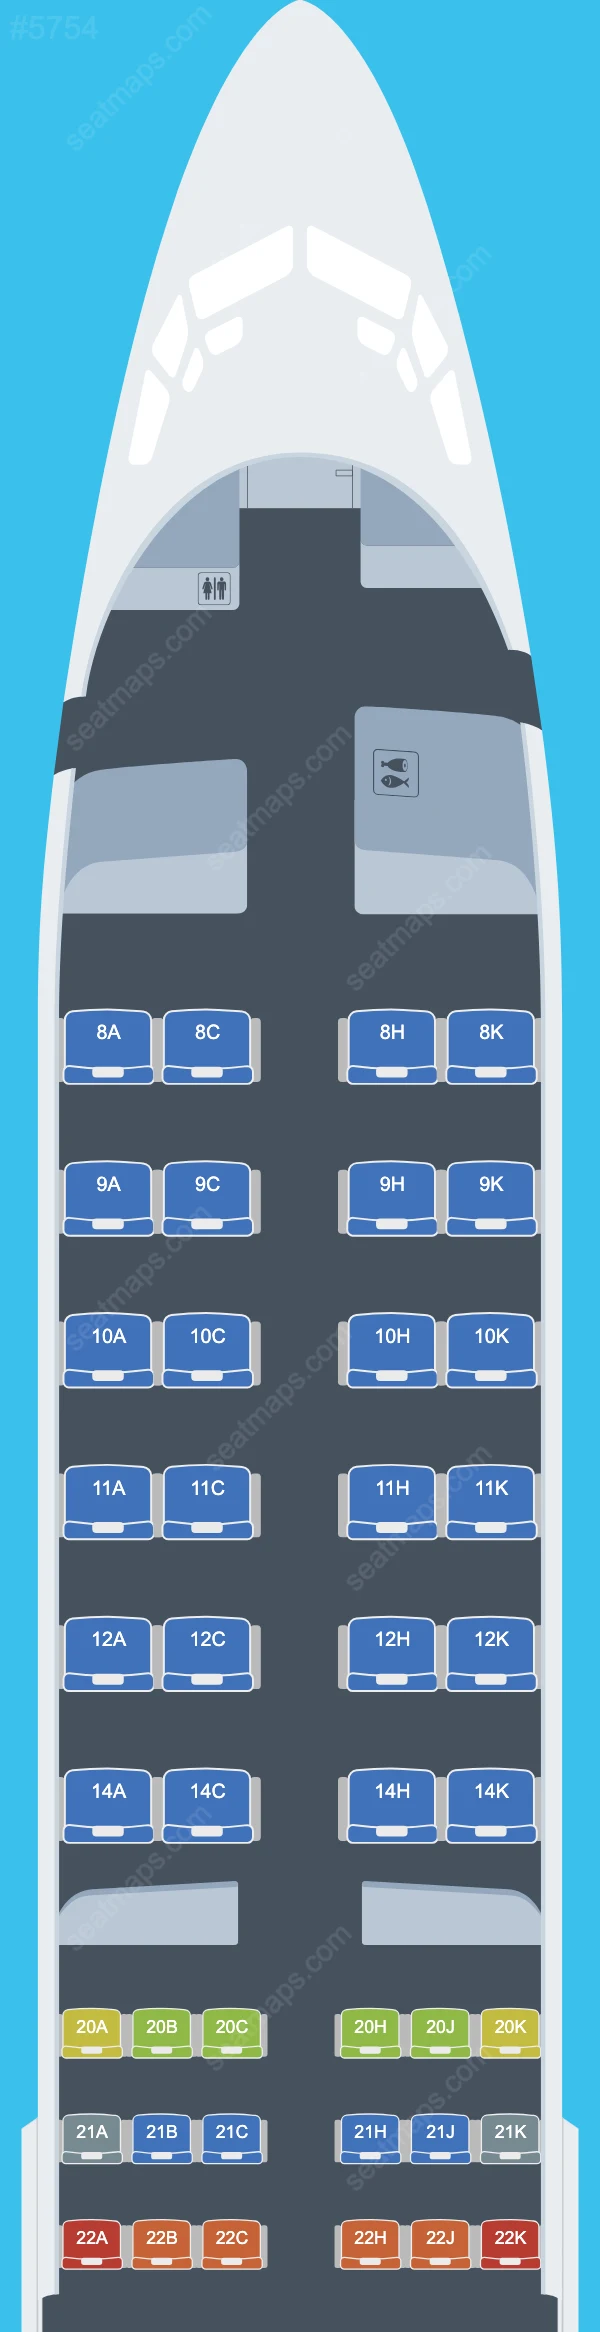 Egyptair Boeing 737 Seat Maps 737-800 V.1